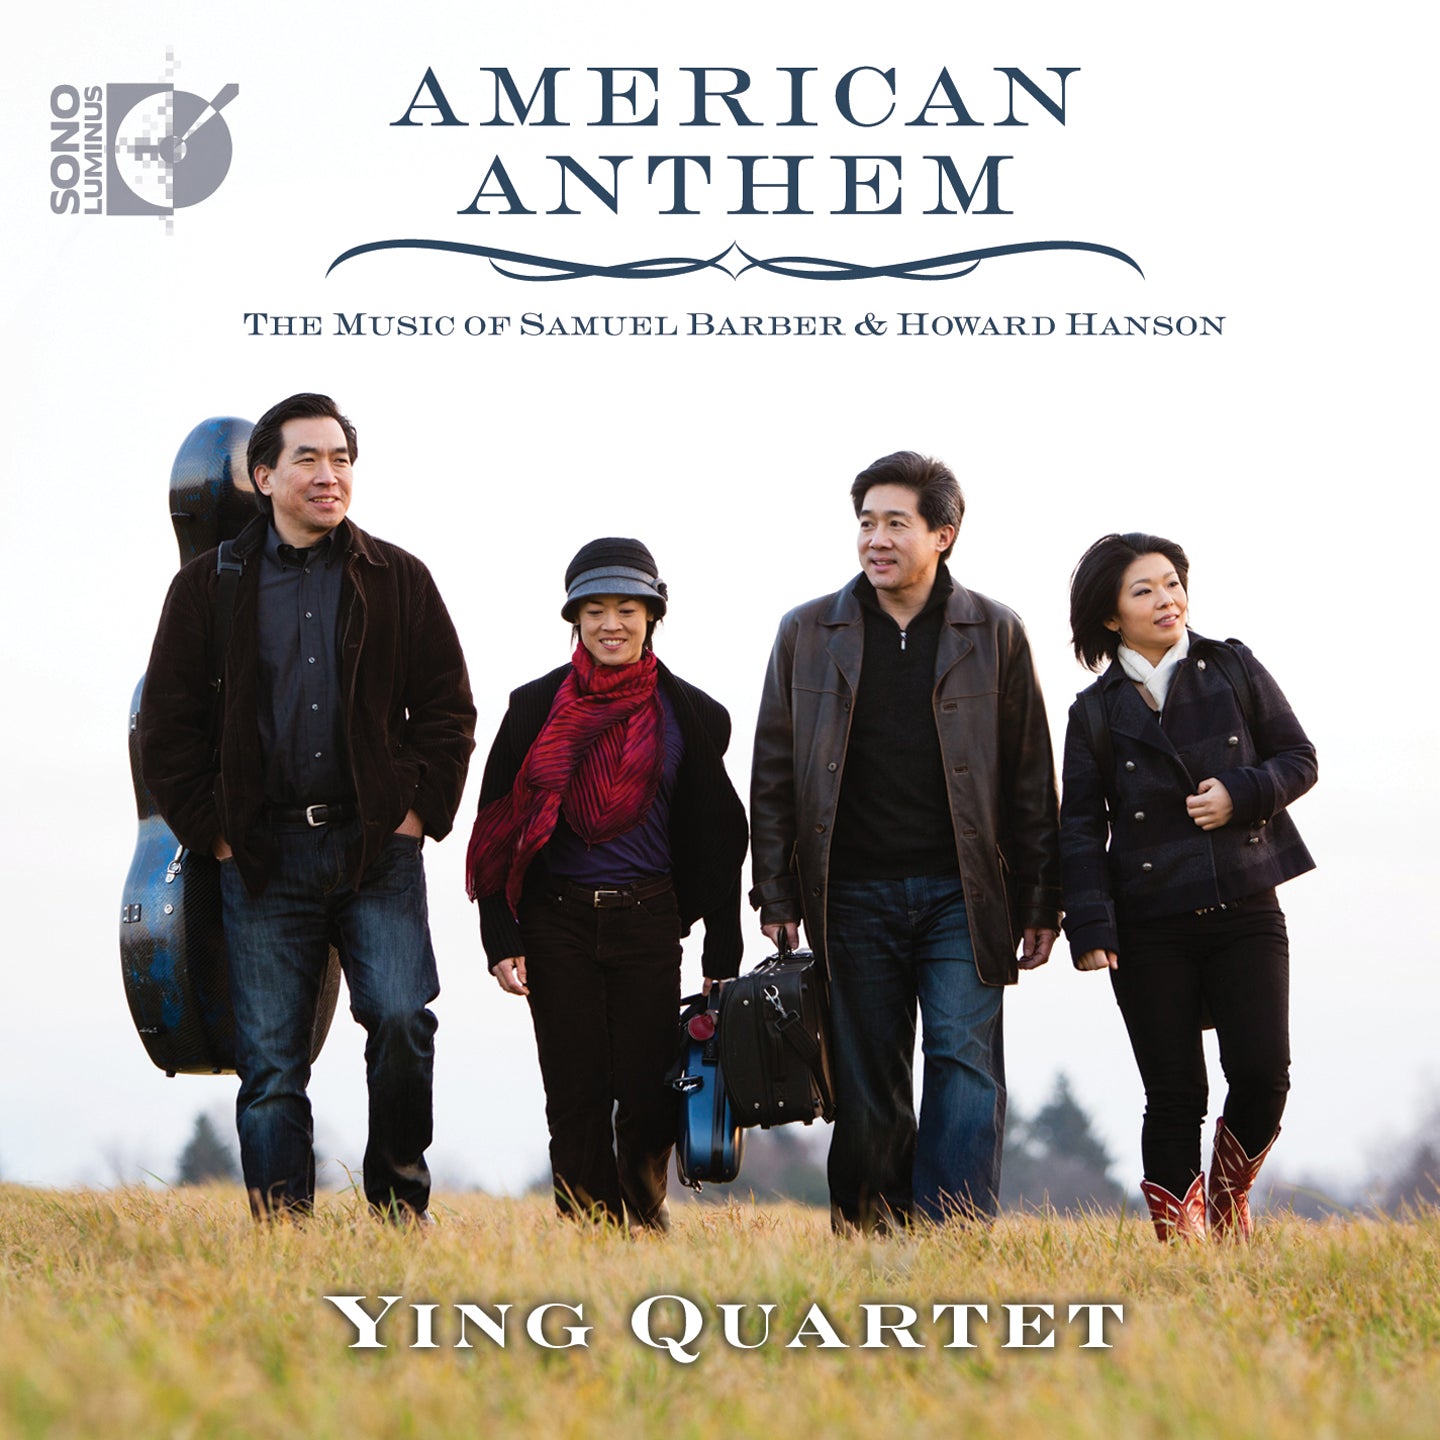 American Anthem / Ying Quartet